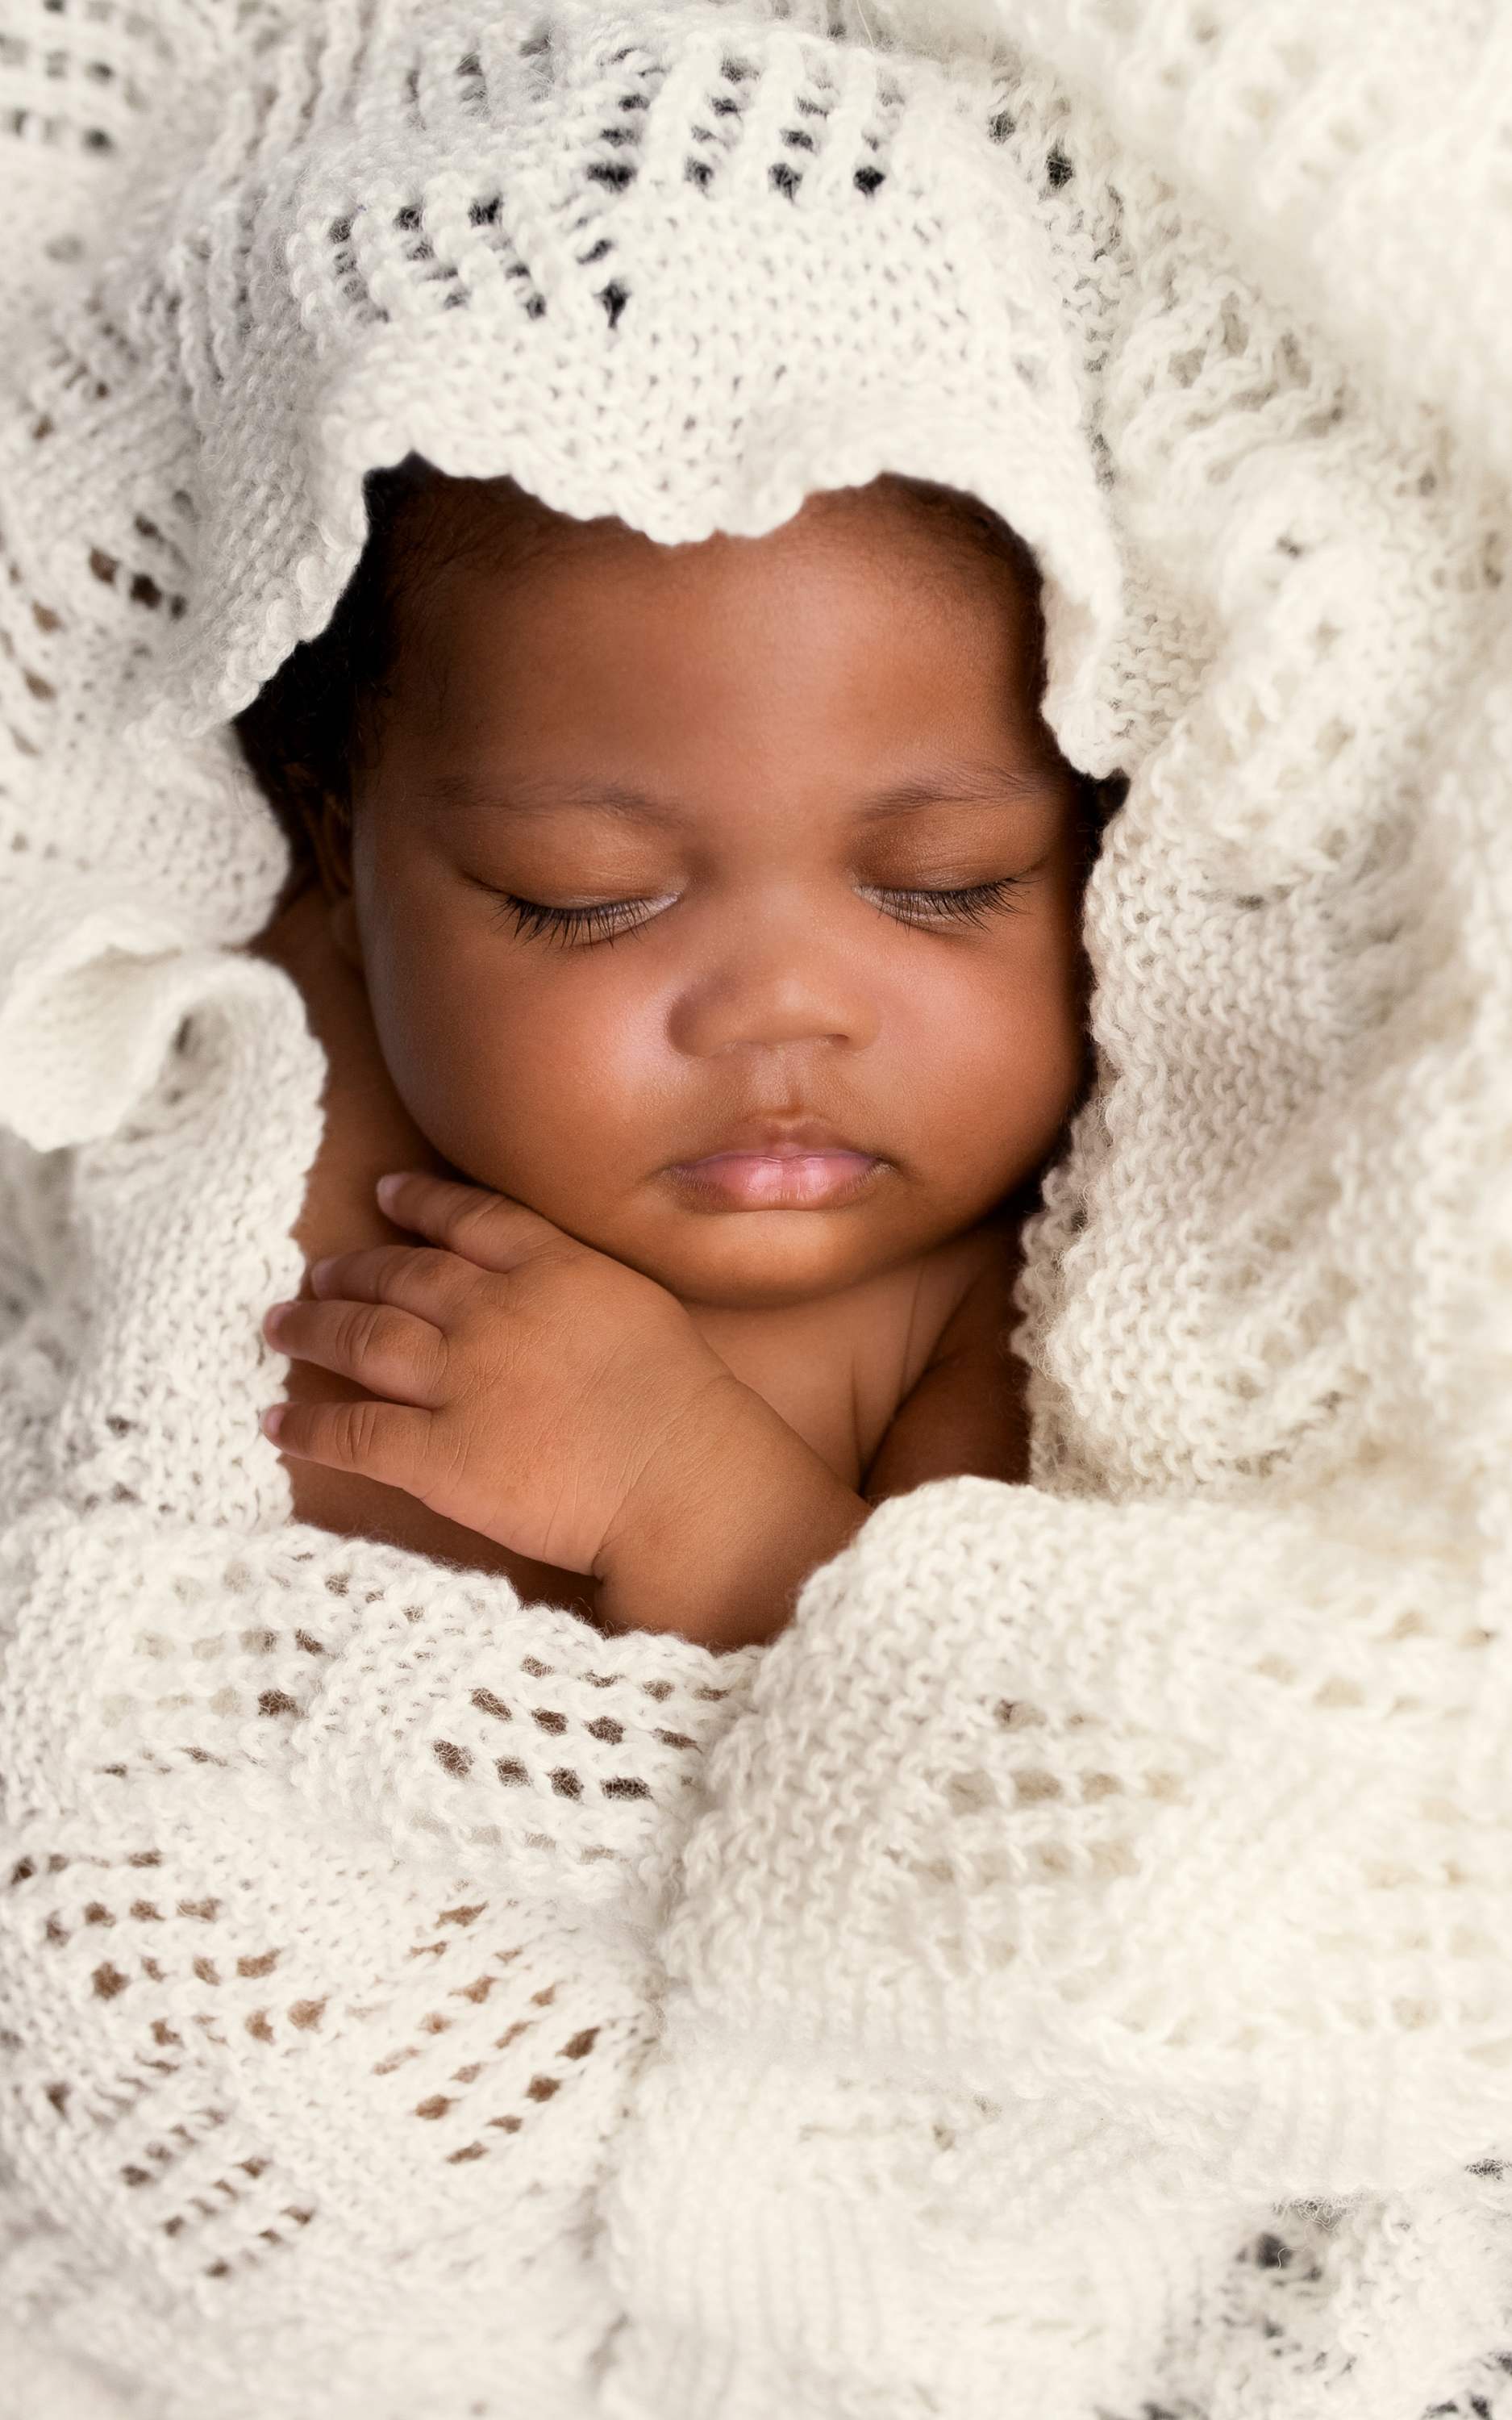 Baby Decke mit Ajourmuster - Strickset von LANA GROSSA jetzt online kaufen bei OONIQUE